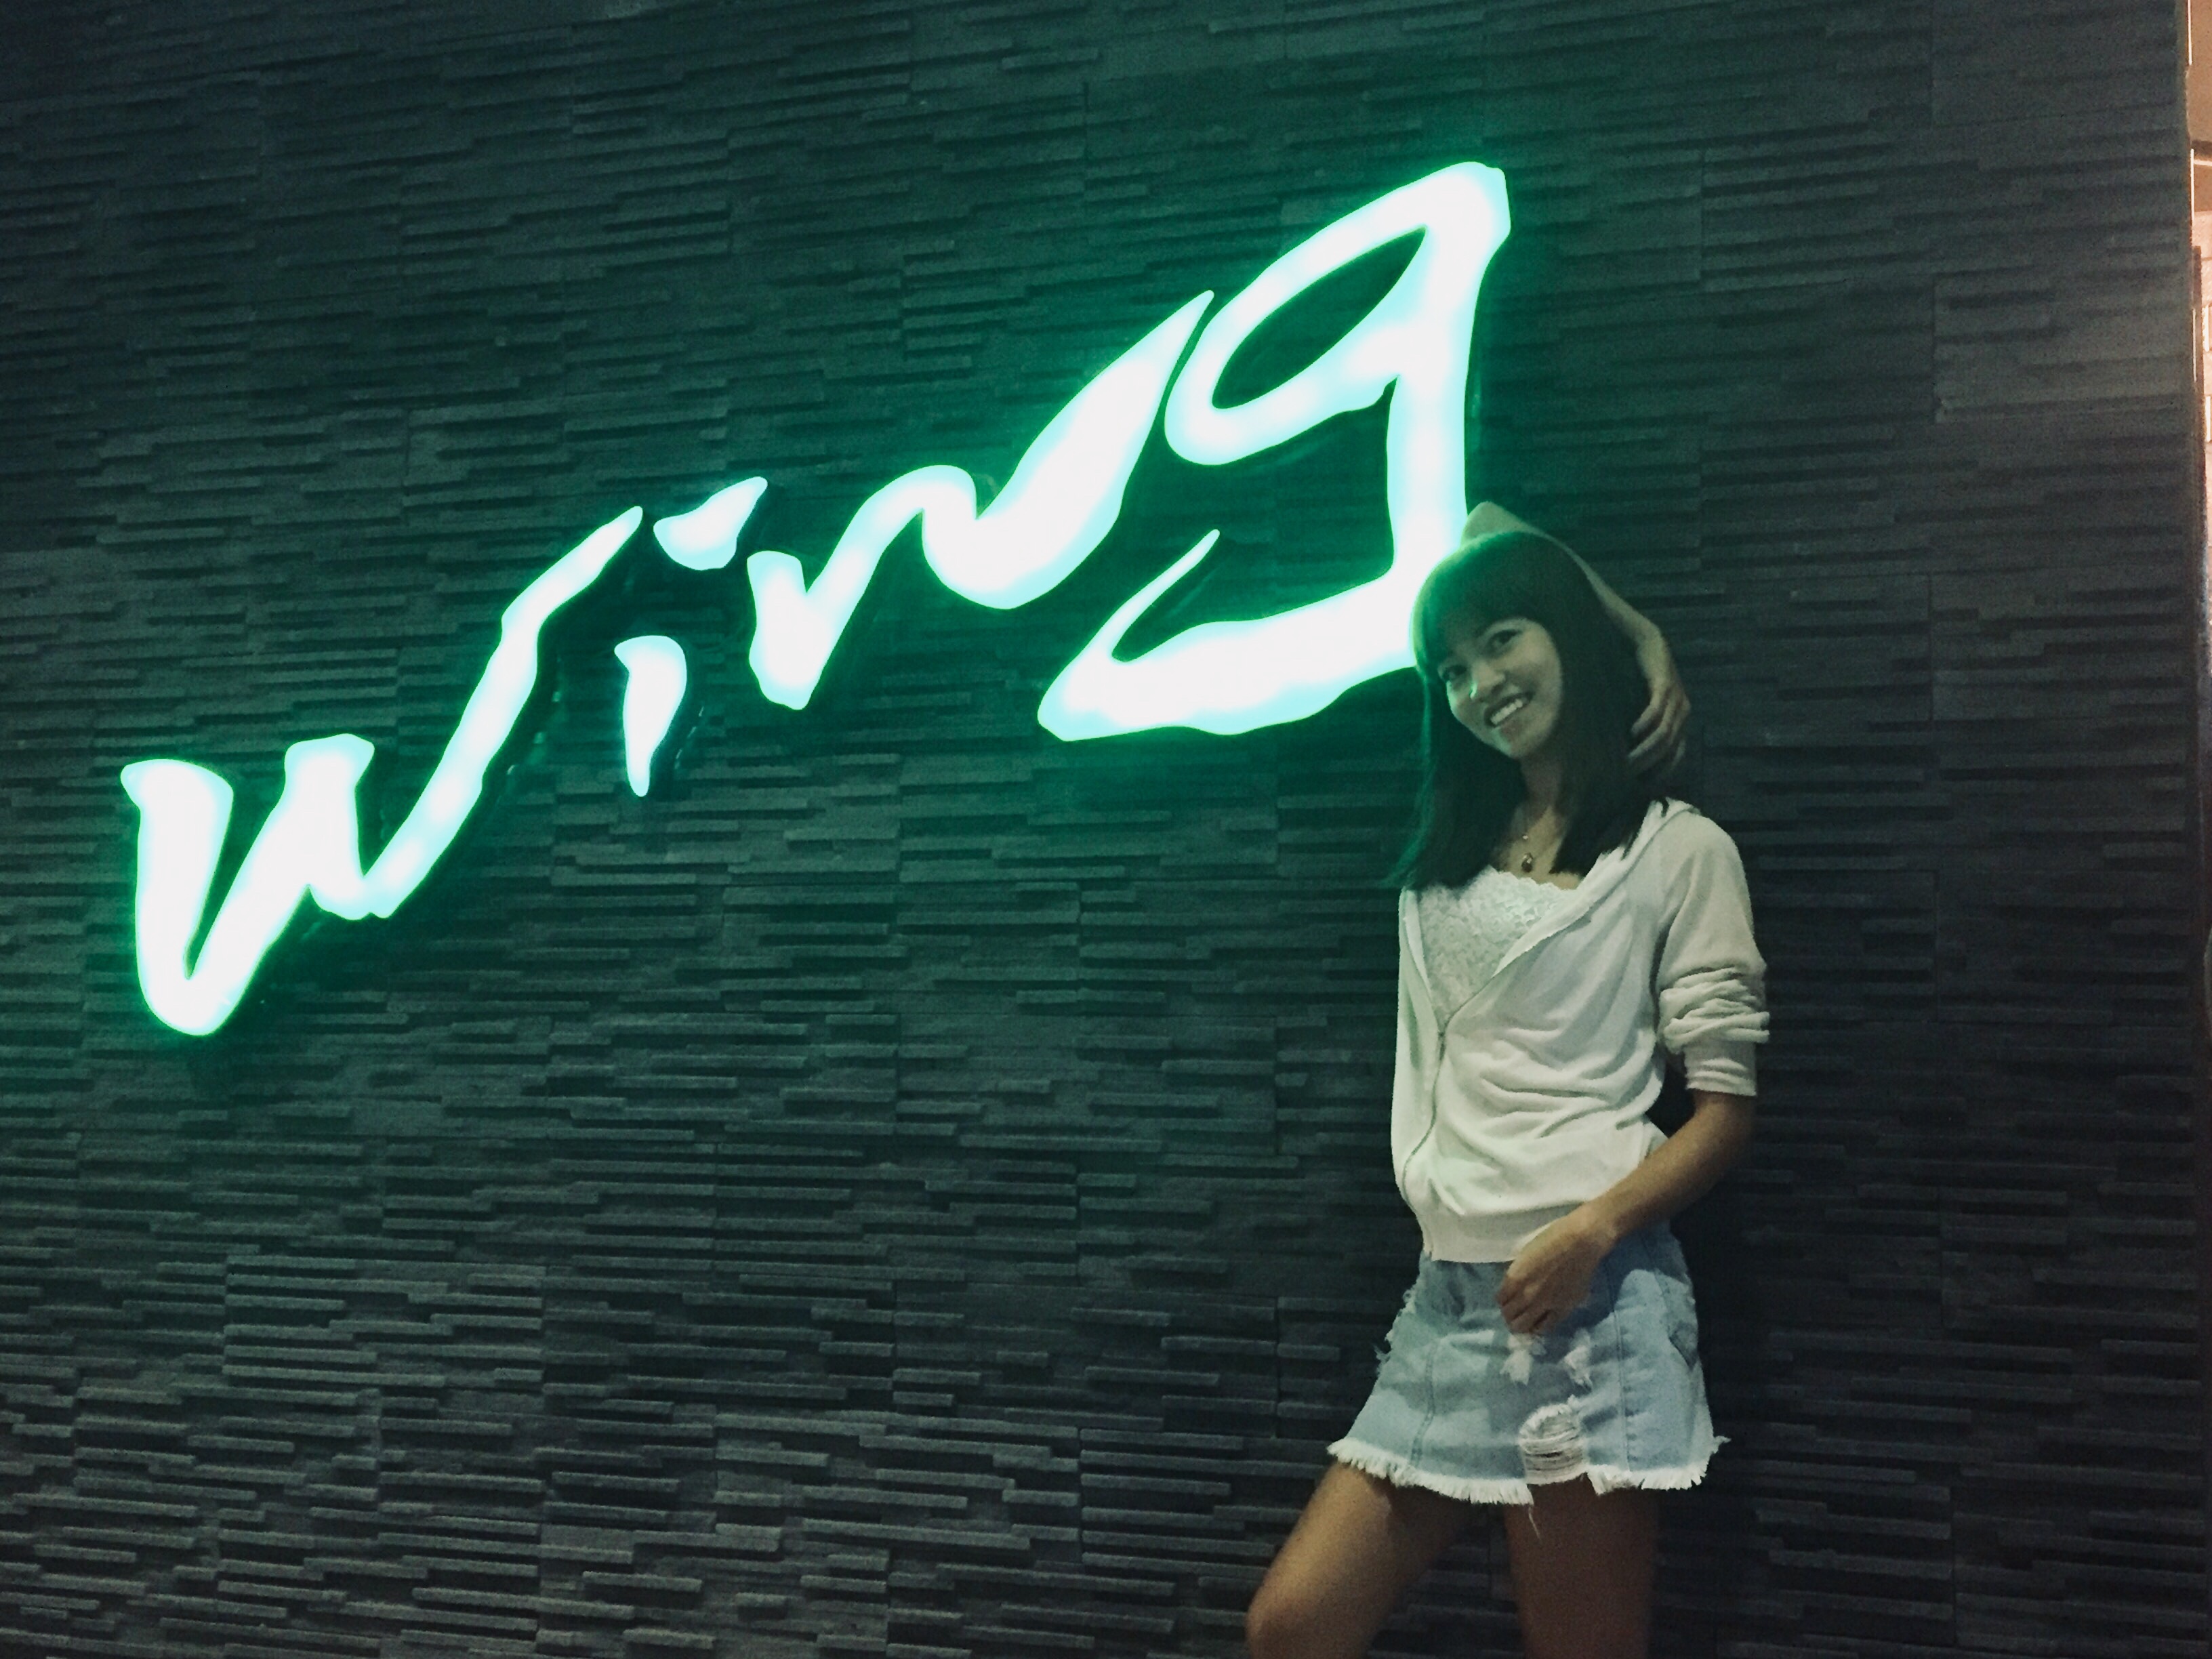 KTV・ウィング(Wing)、セブ島